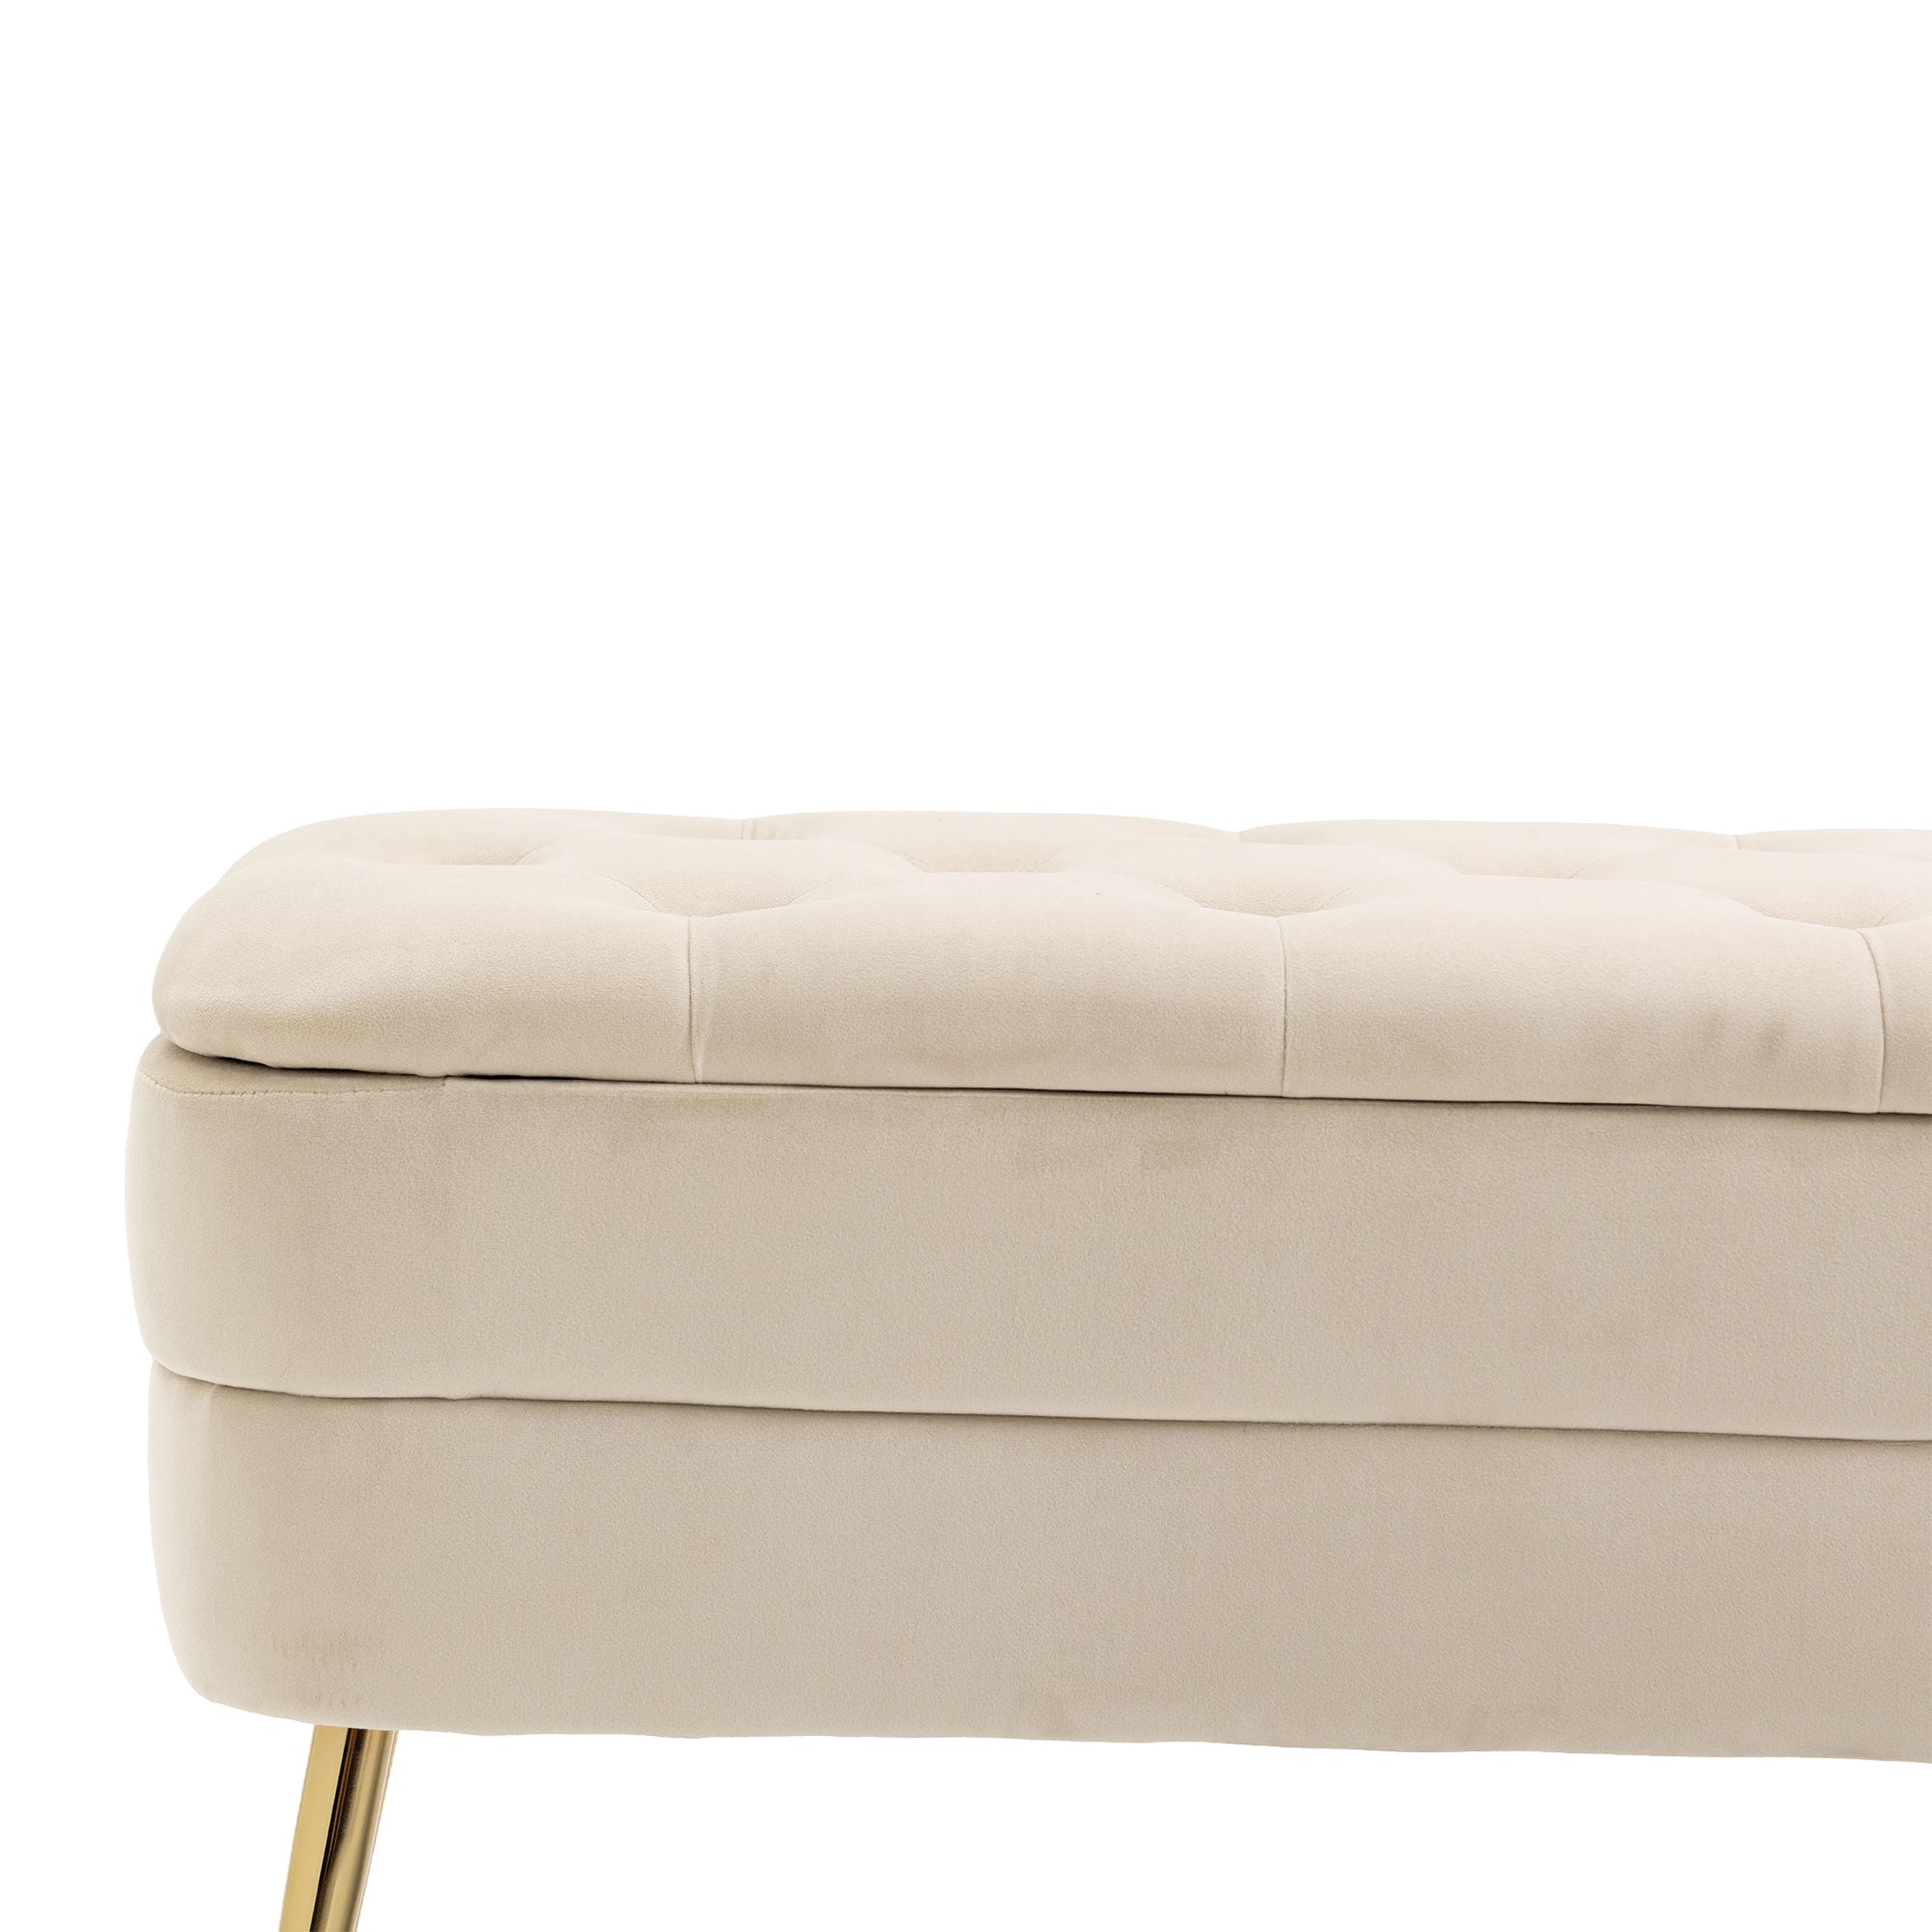 COOLMORE Storage Ottoman,Bedroom End Bench,Upholstered beige-velvet